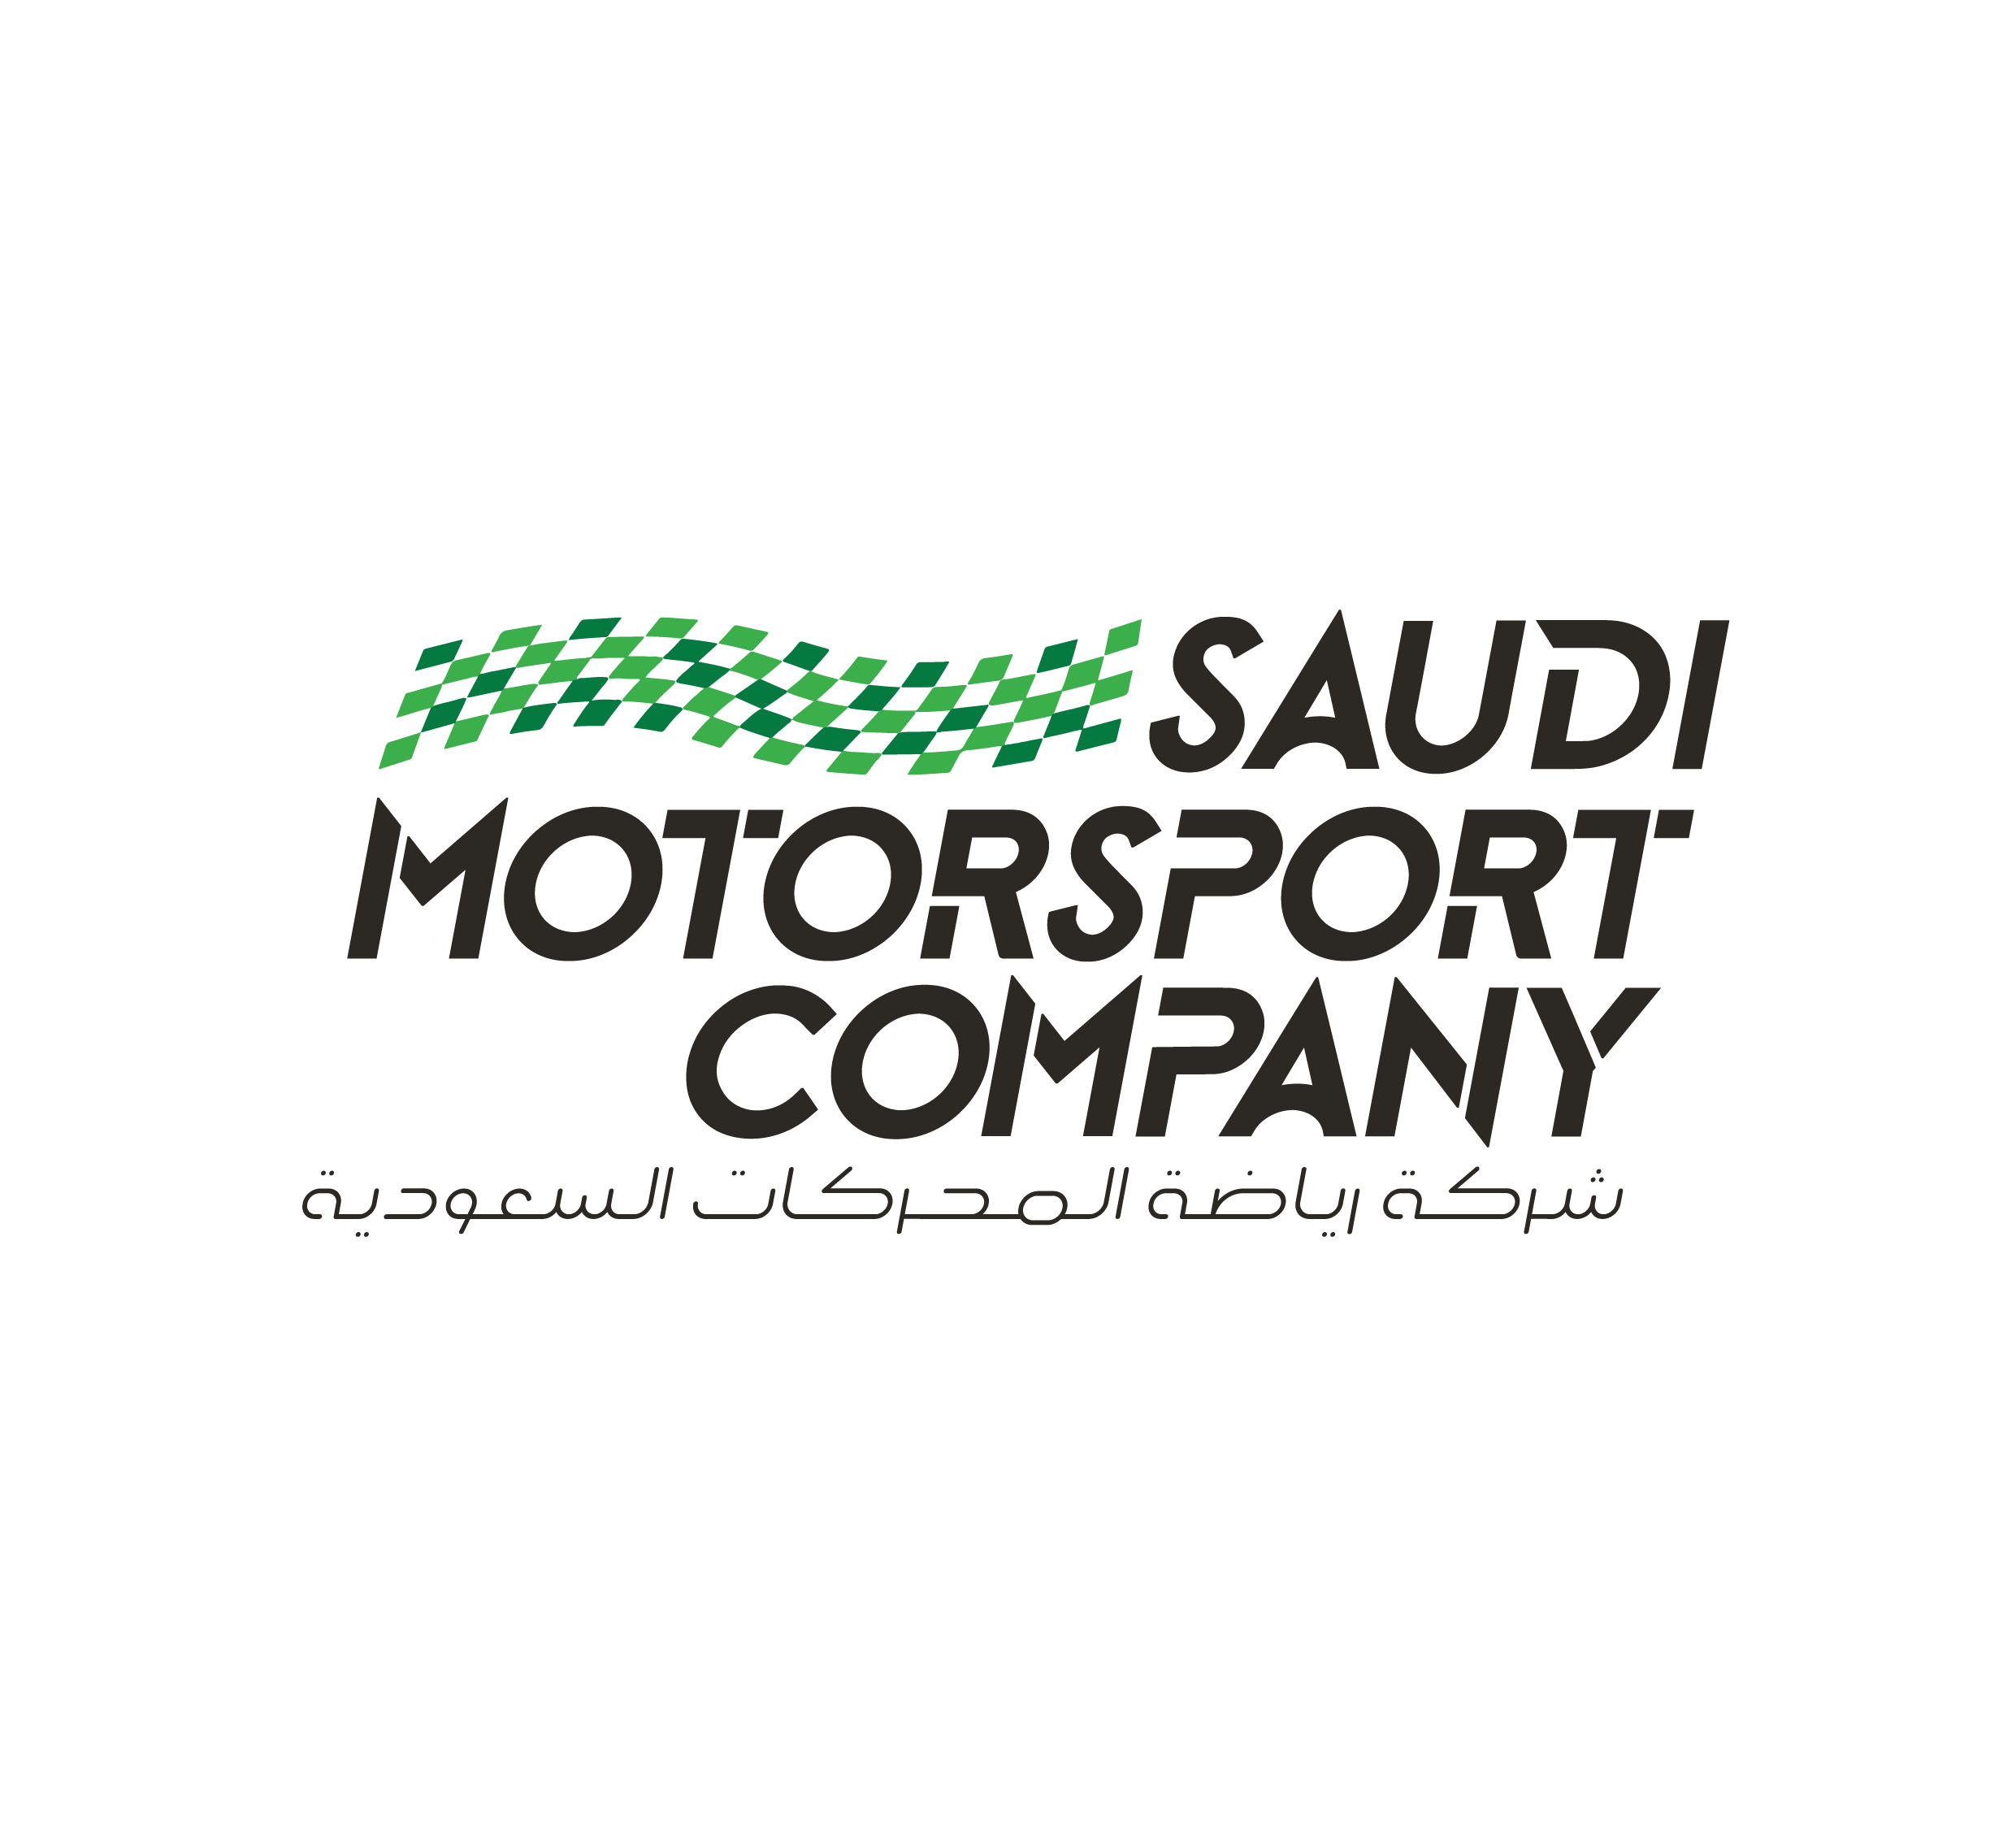 Saudi Motorsport Company